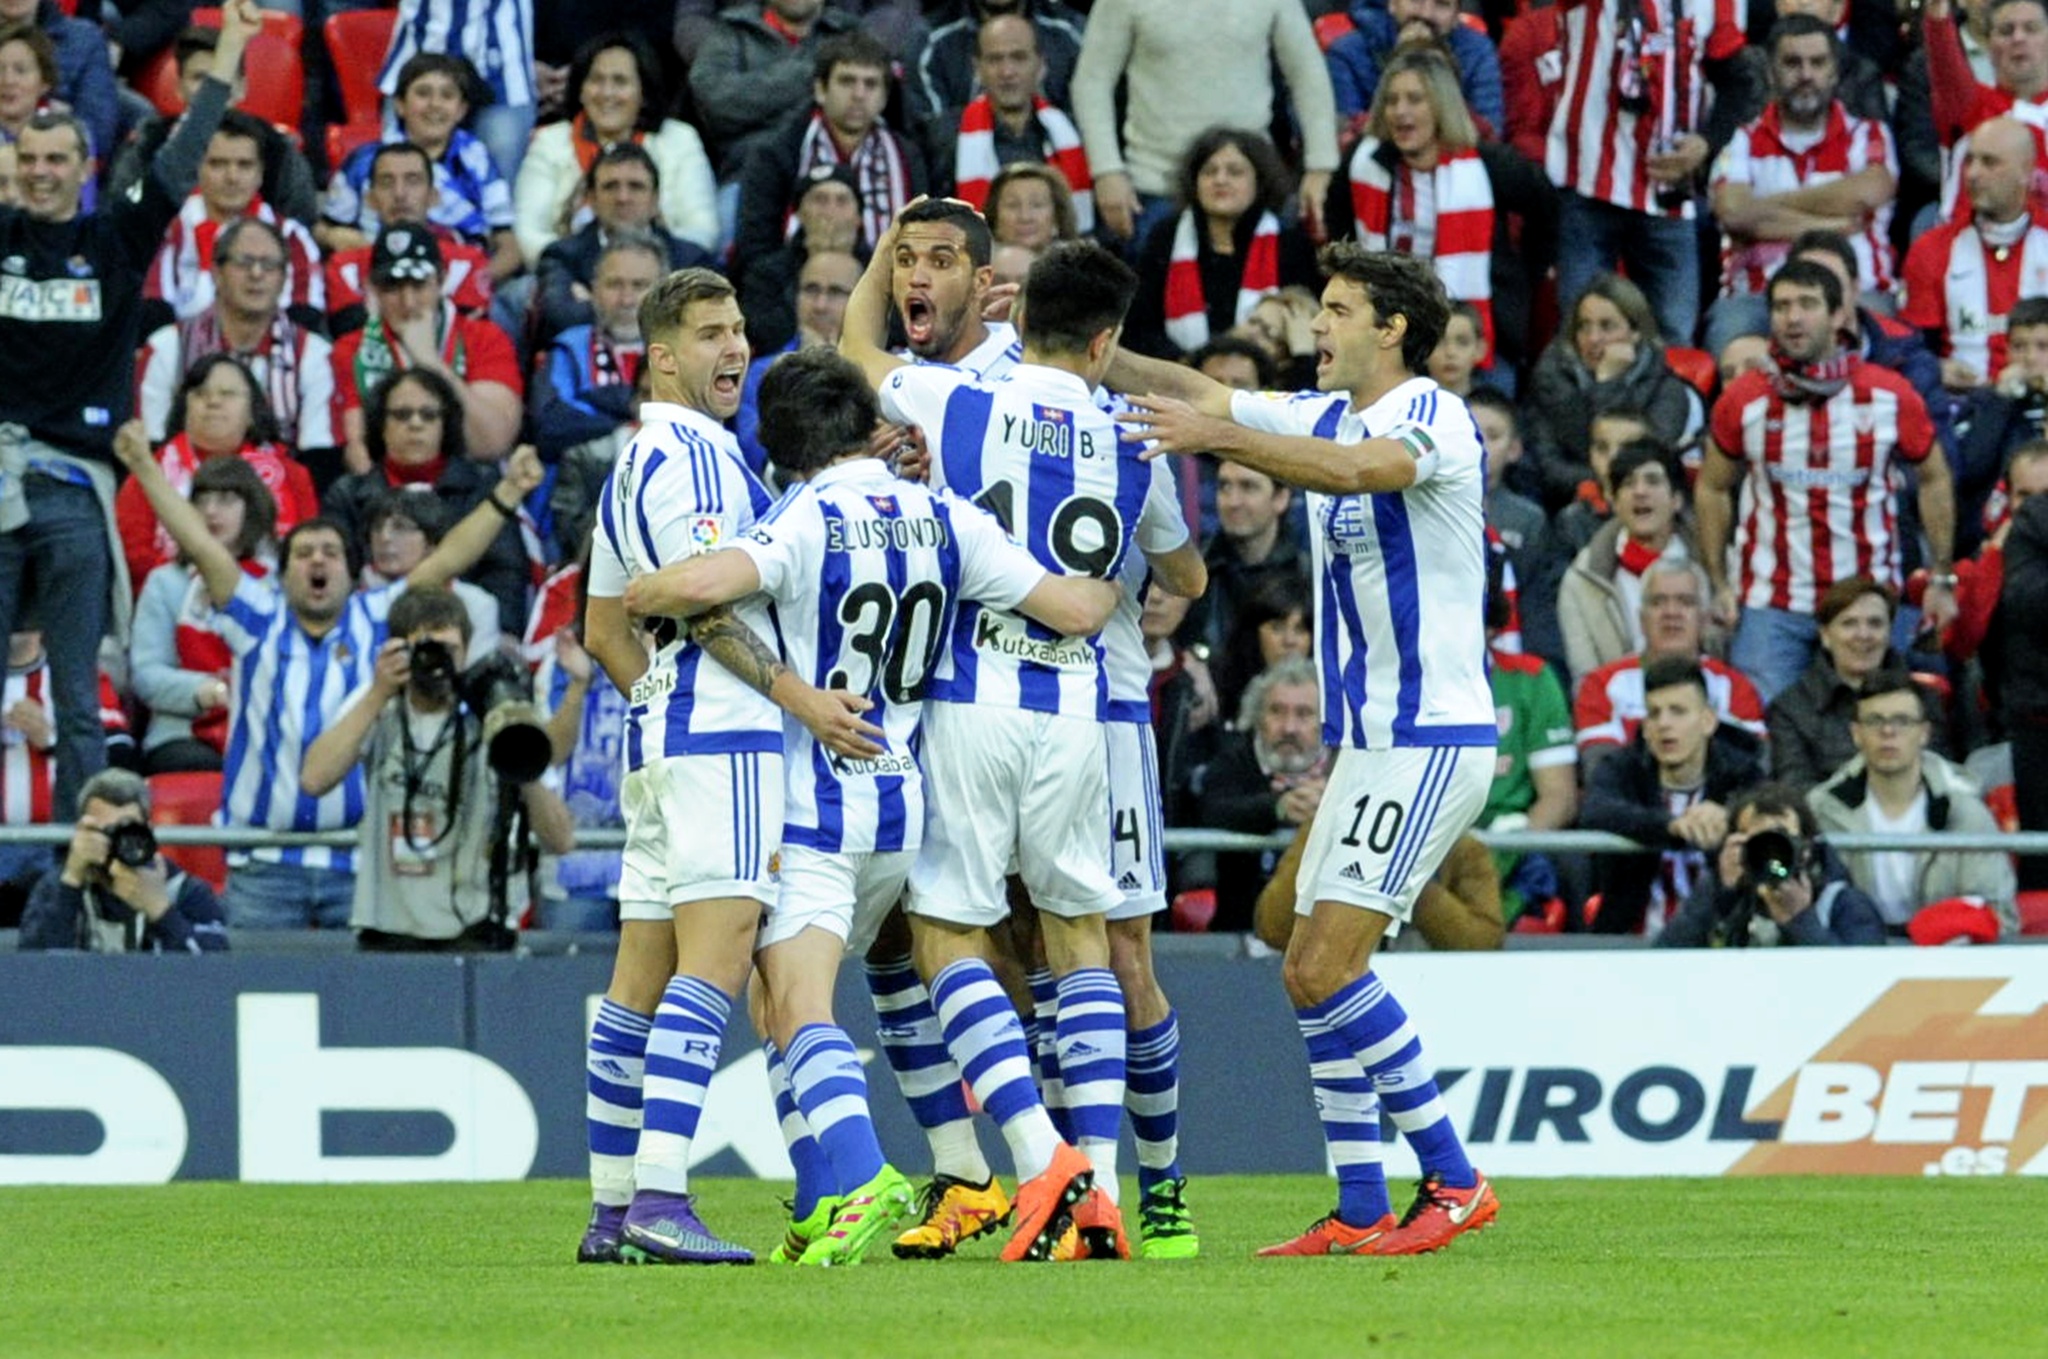 La Real Sociedad celebra la ltima victoria en San Mames 2015-16